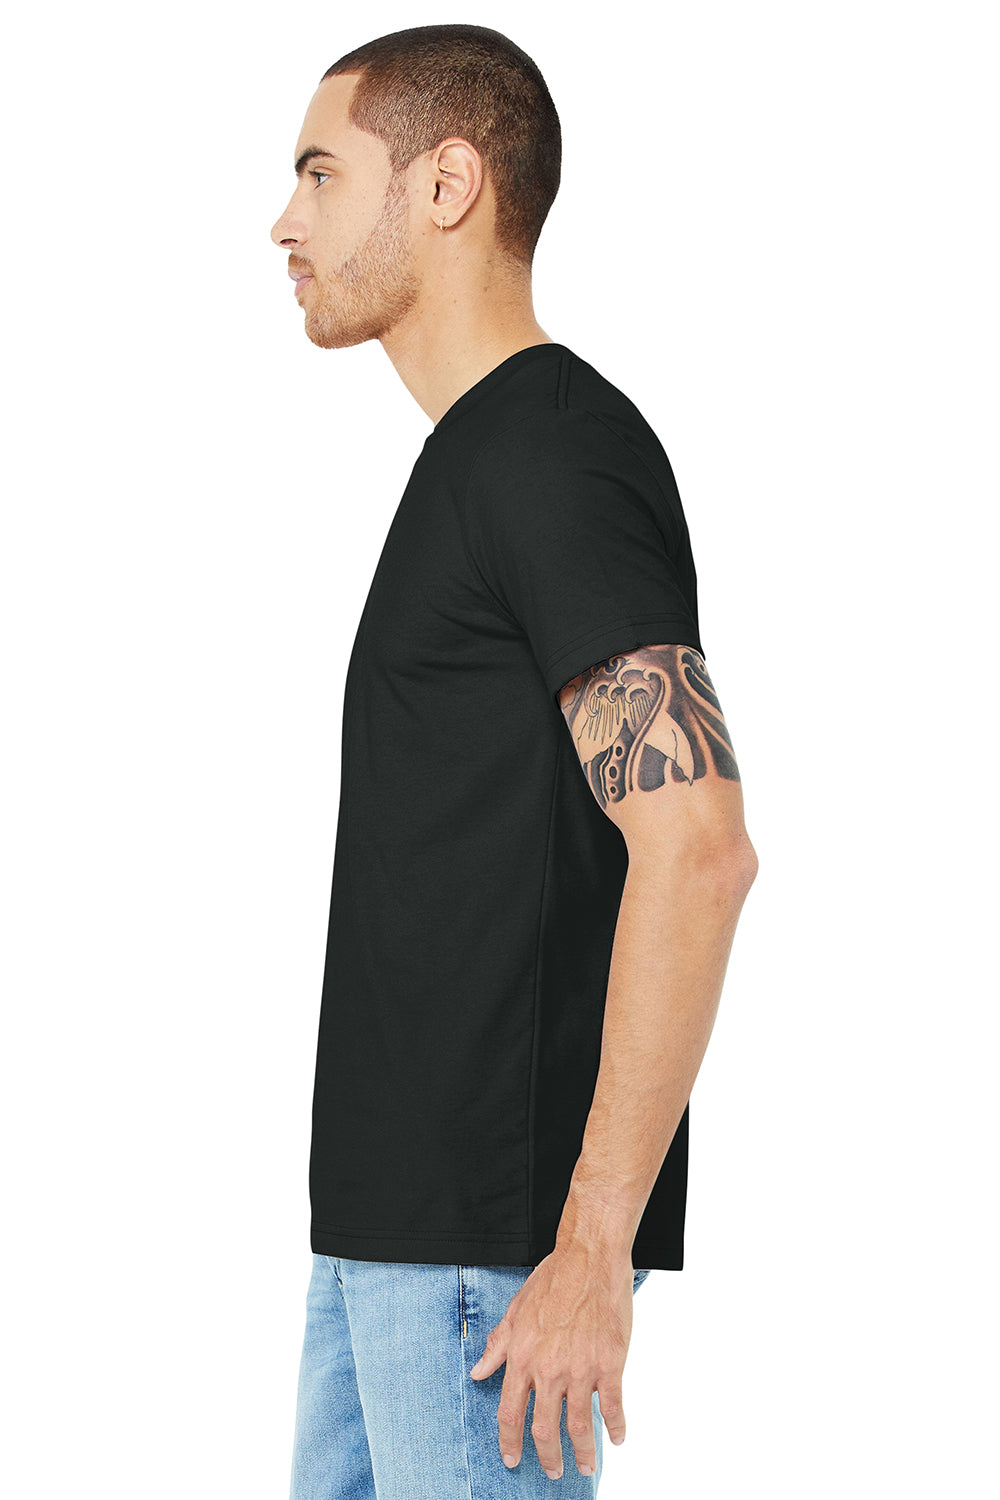 Bella + Canvas BC3001/3001C Mens Jersey Short Sleeve Crewneck T-Shirt Vintage Black Model Side